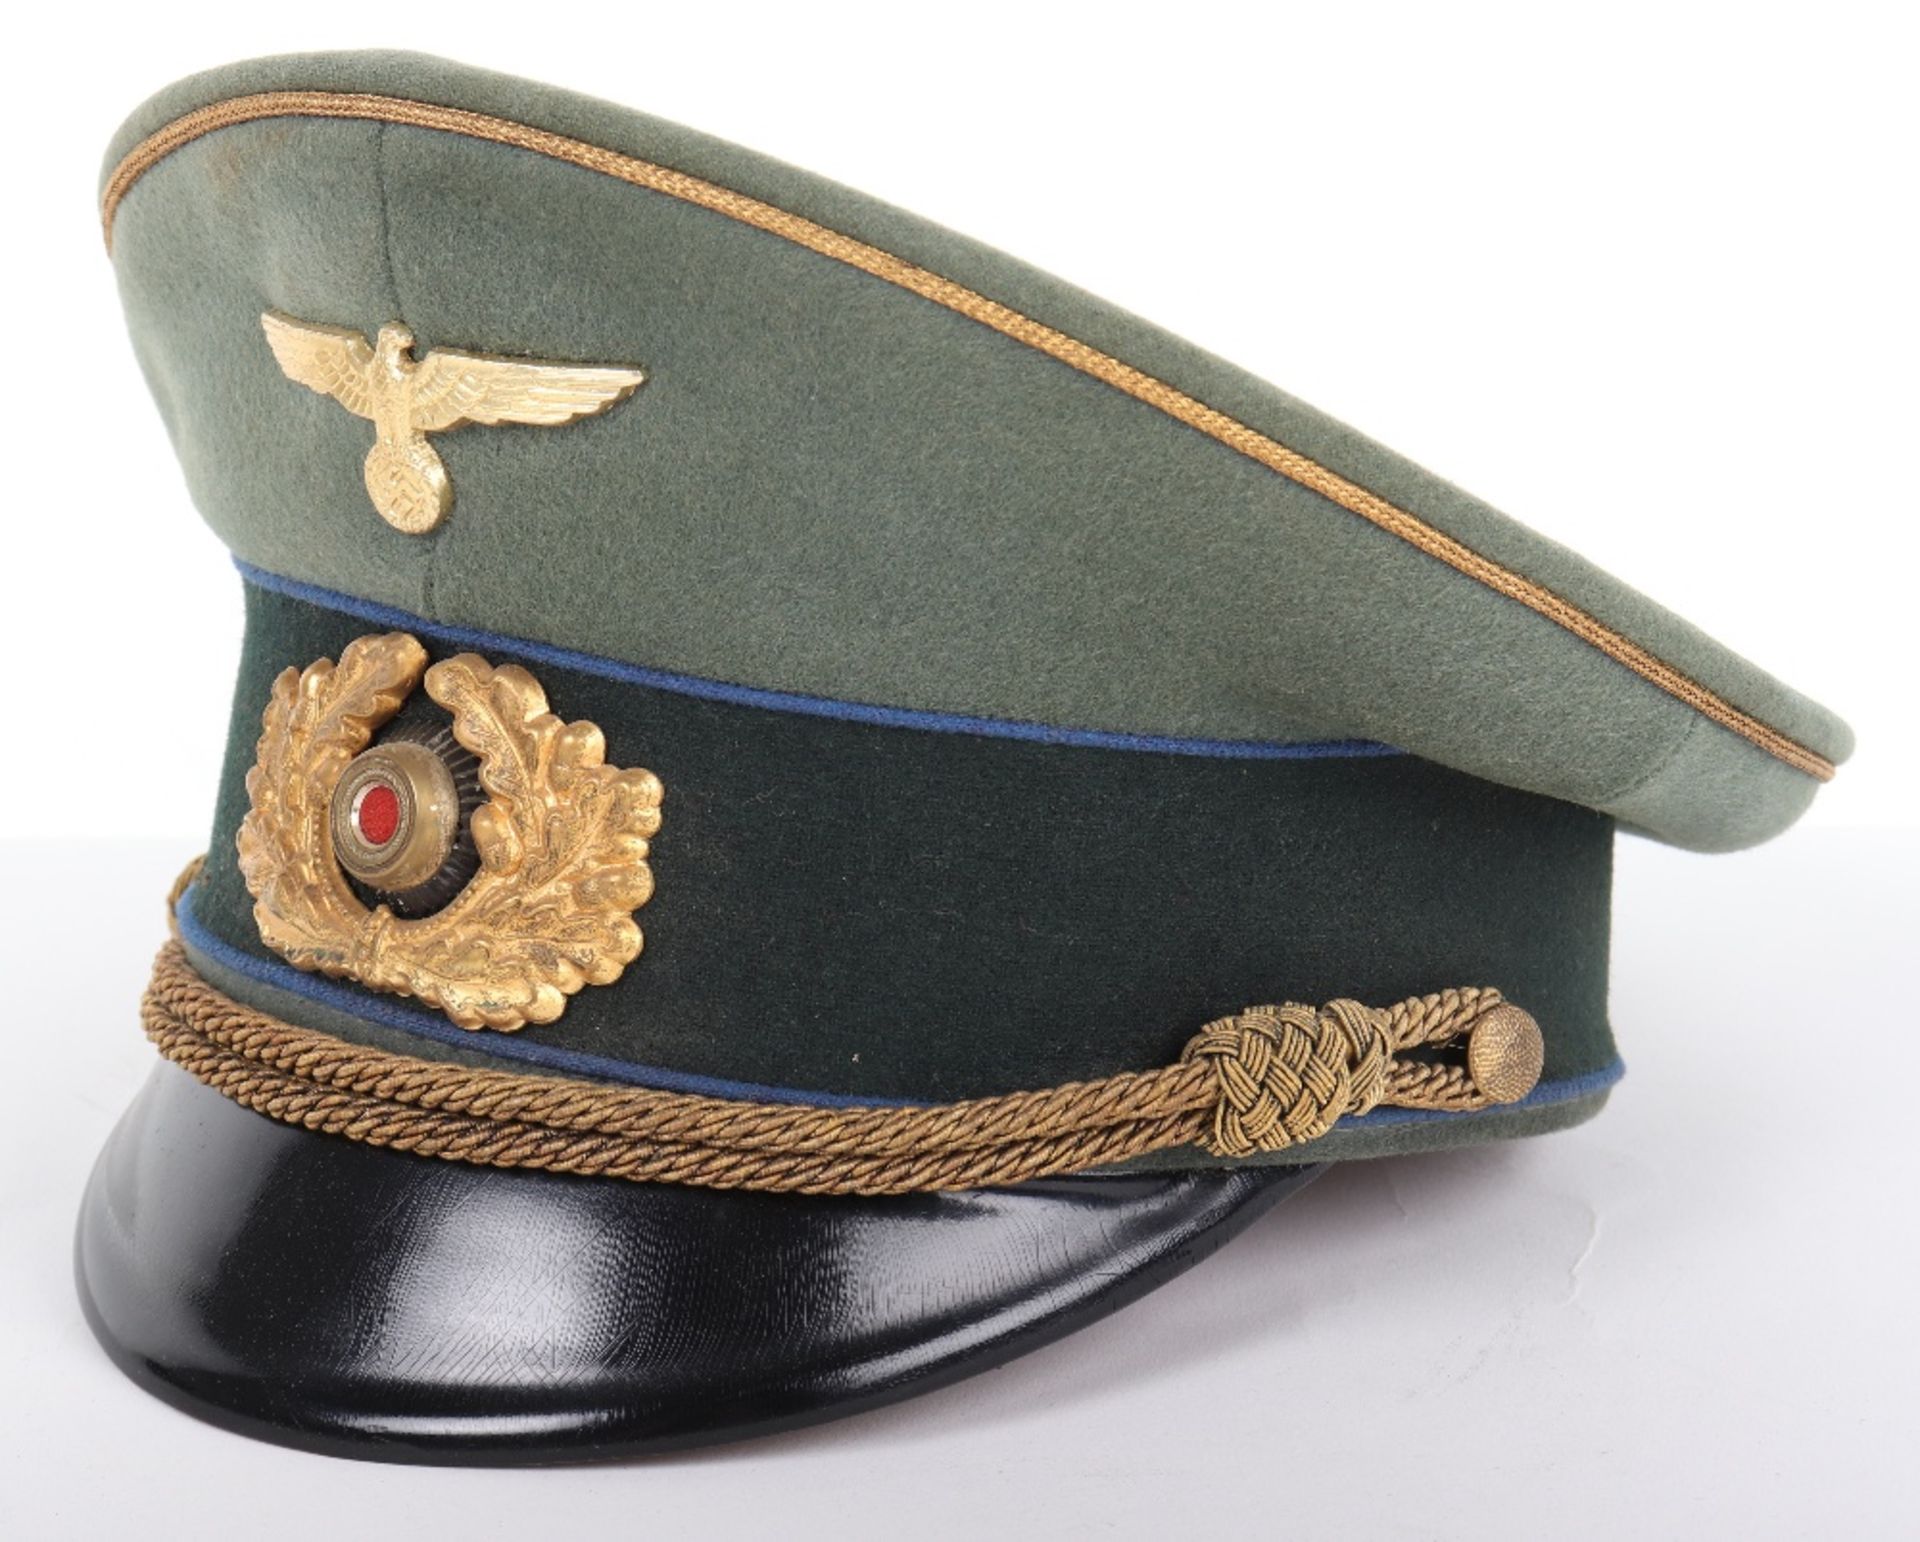 German Army Medical Generals Peaked Cap - Image 2 of 6